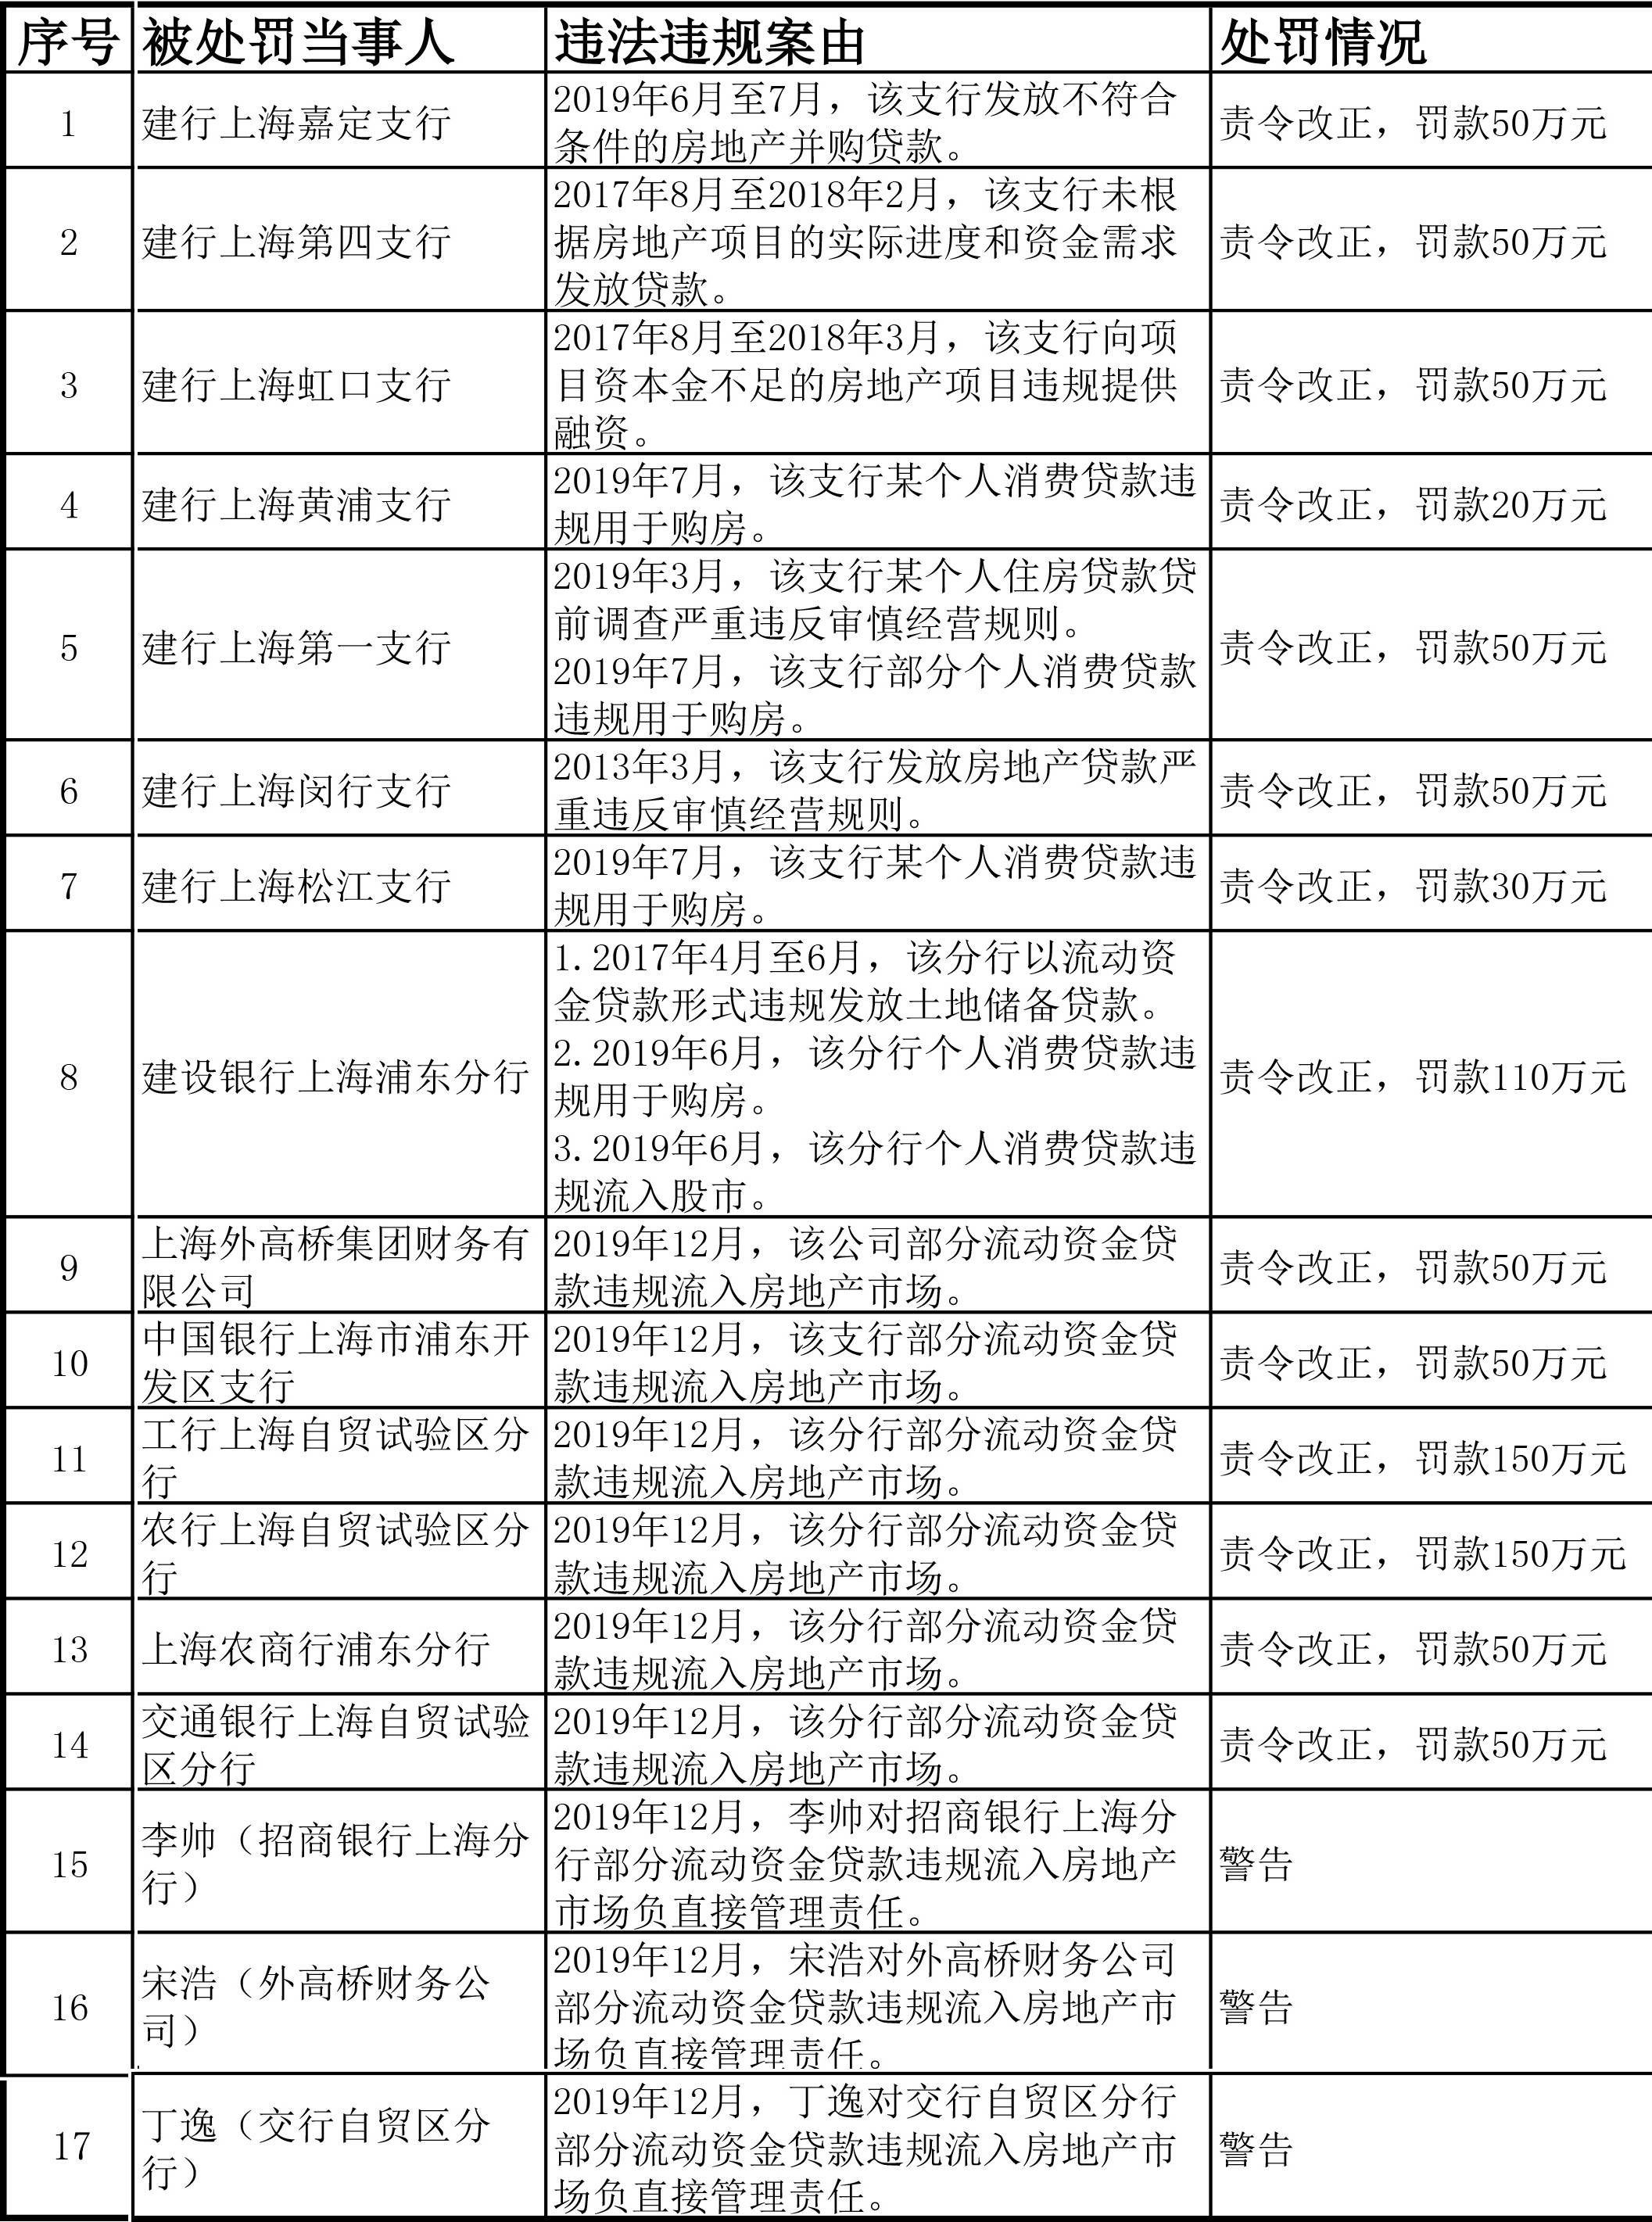 上海银保监局开近千万元罚单 剑指涉房贷款,五大行均被罚